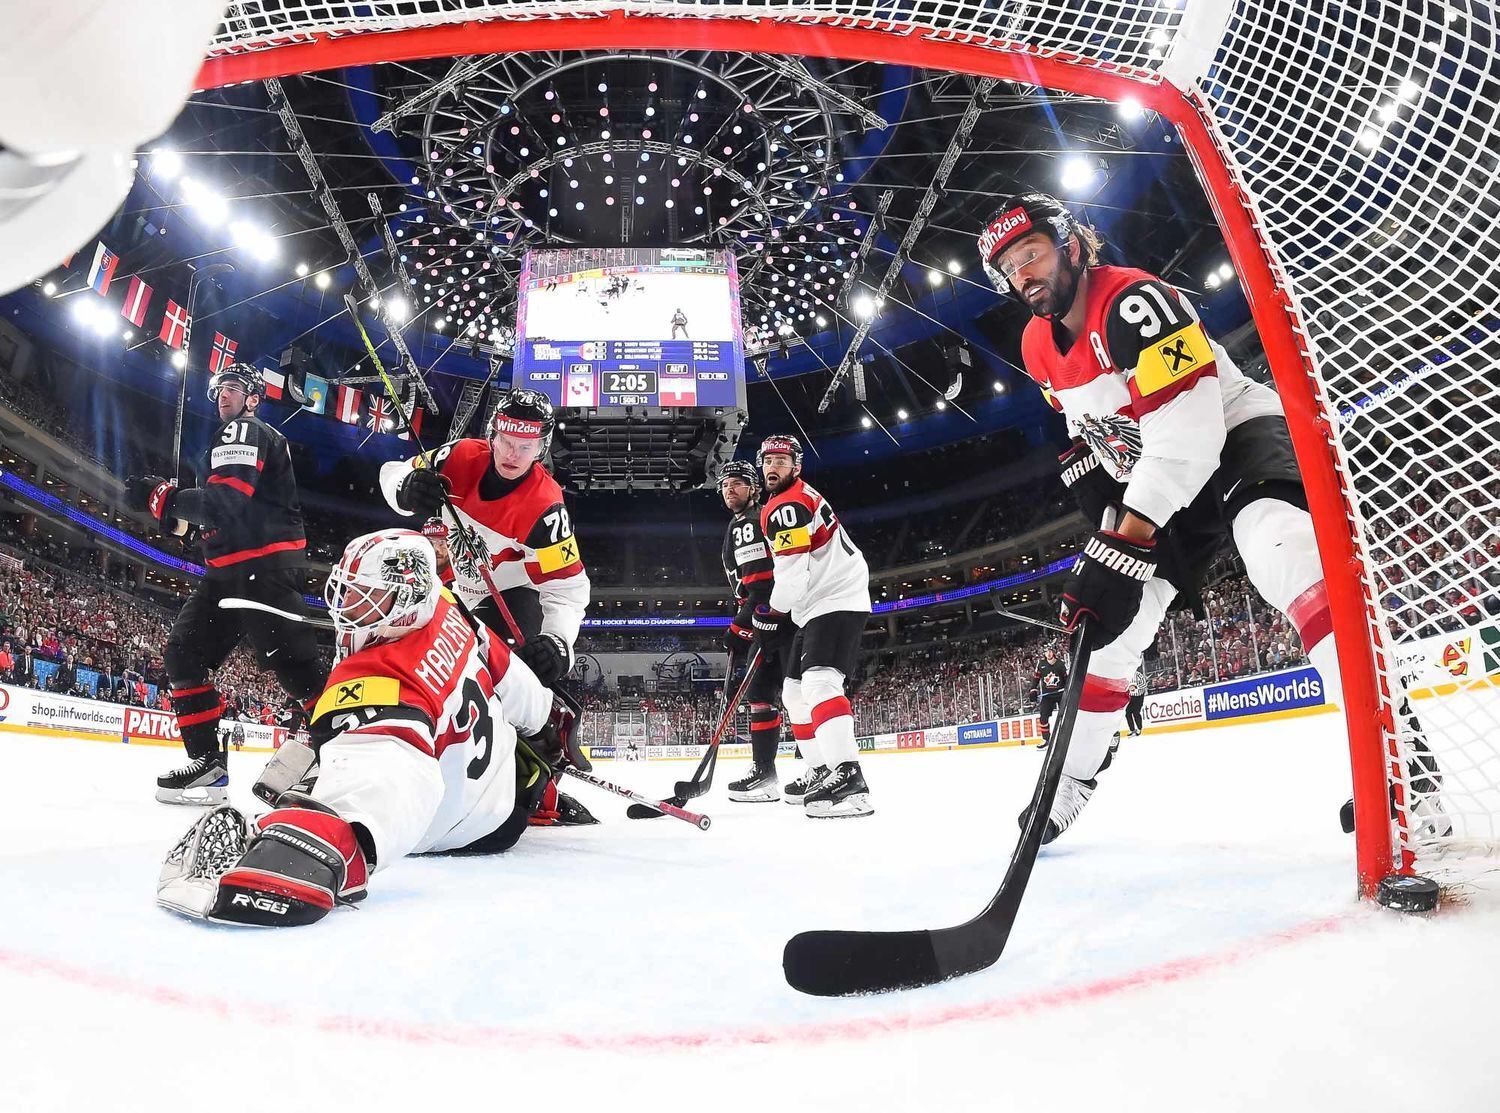 На ЧМ по хоккею Канада, выигрывая 6:1, упустила победу в основное время. Видео